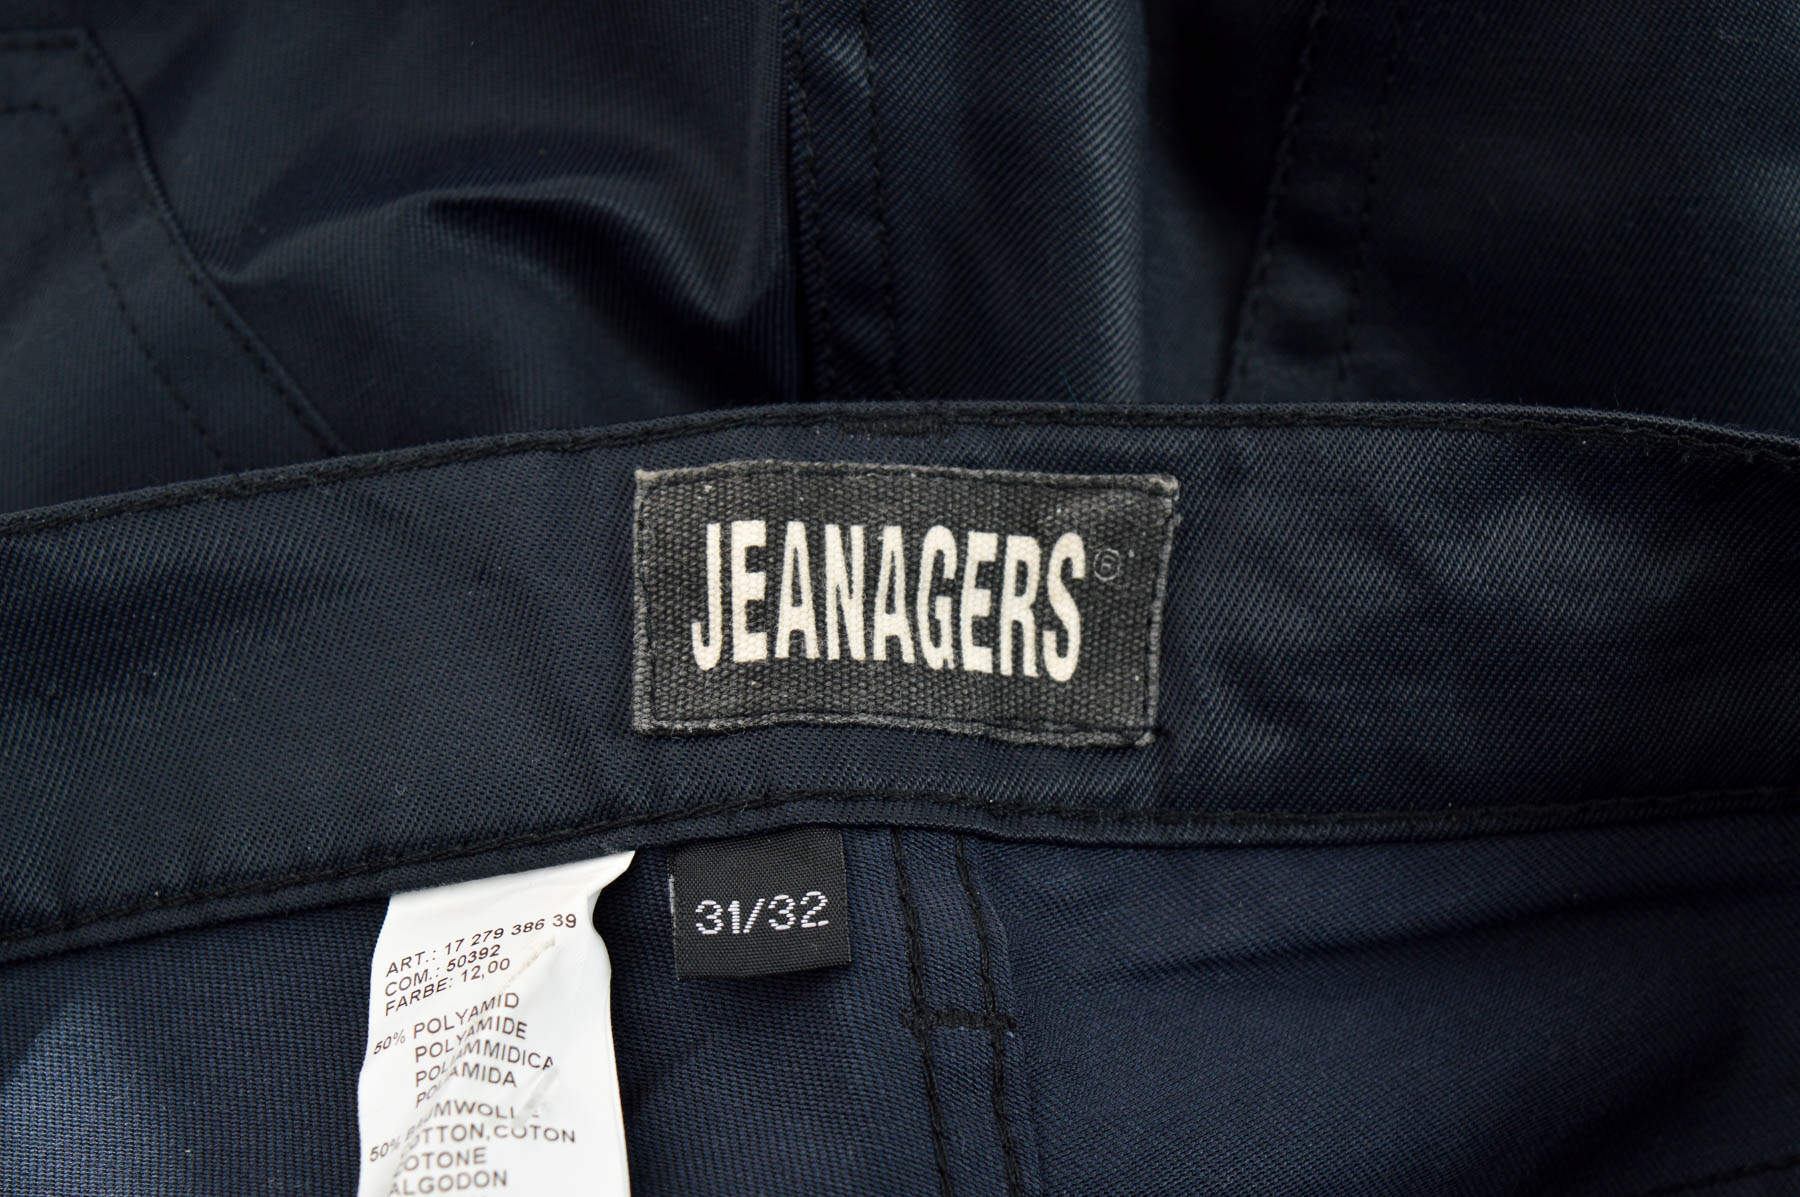 Pantalon pentru bărbați - Jeanagers - 2